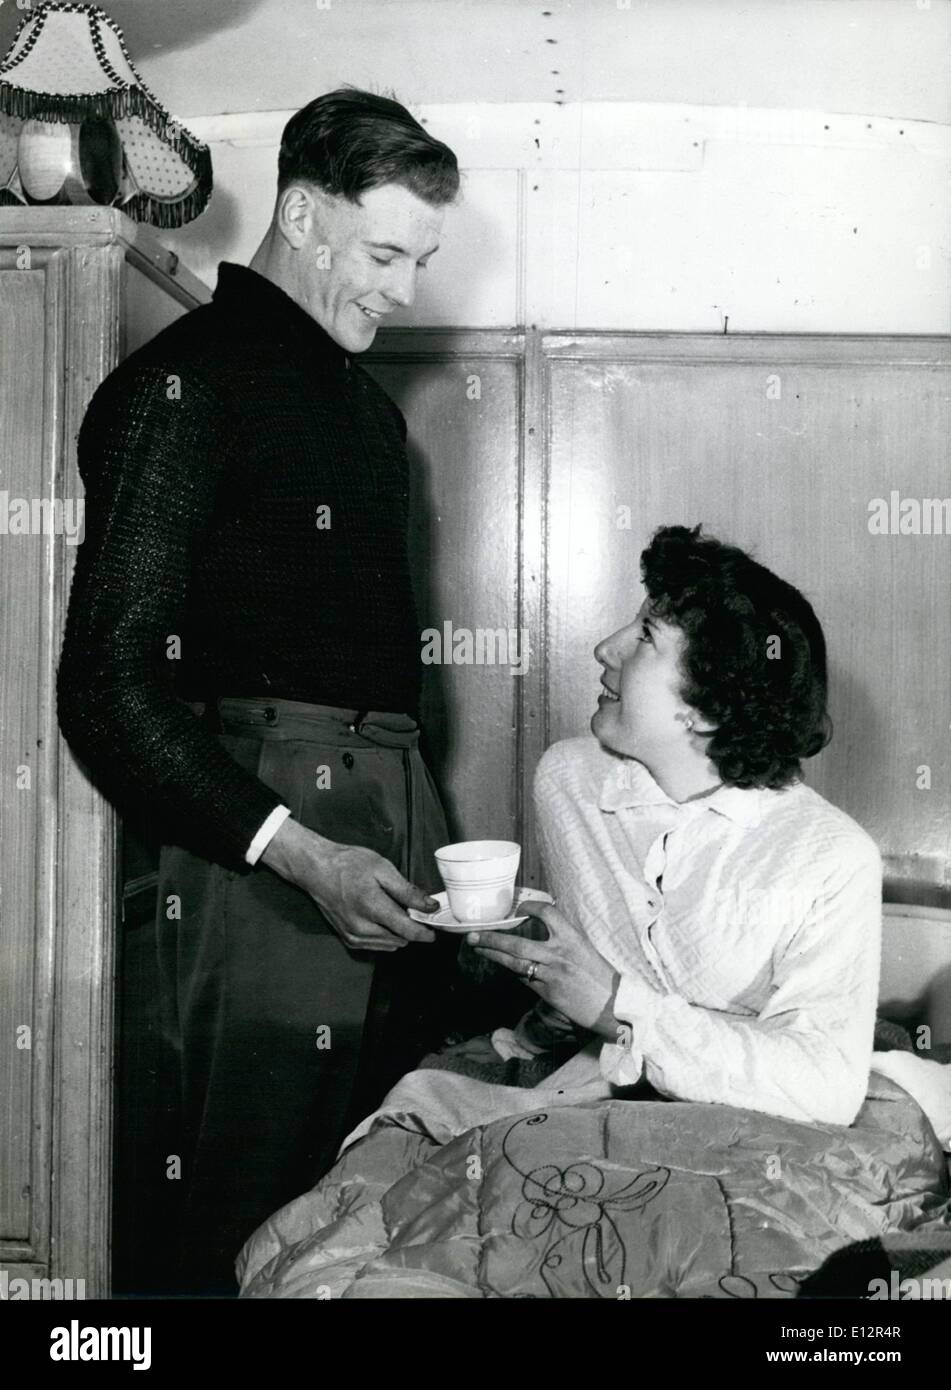 Febbraio 25, 2012 - La sua prima tazza di tè al mattino - dal marito: Gilbert Bundy porta la sua moglie Shirley, una tazza di tè, la mattina dopo il matrimonio. Essi sono honeymooning nella loro casa - un bus convertito. Foto Stock